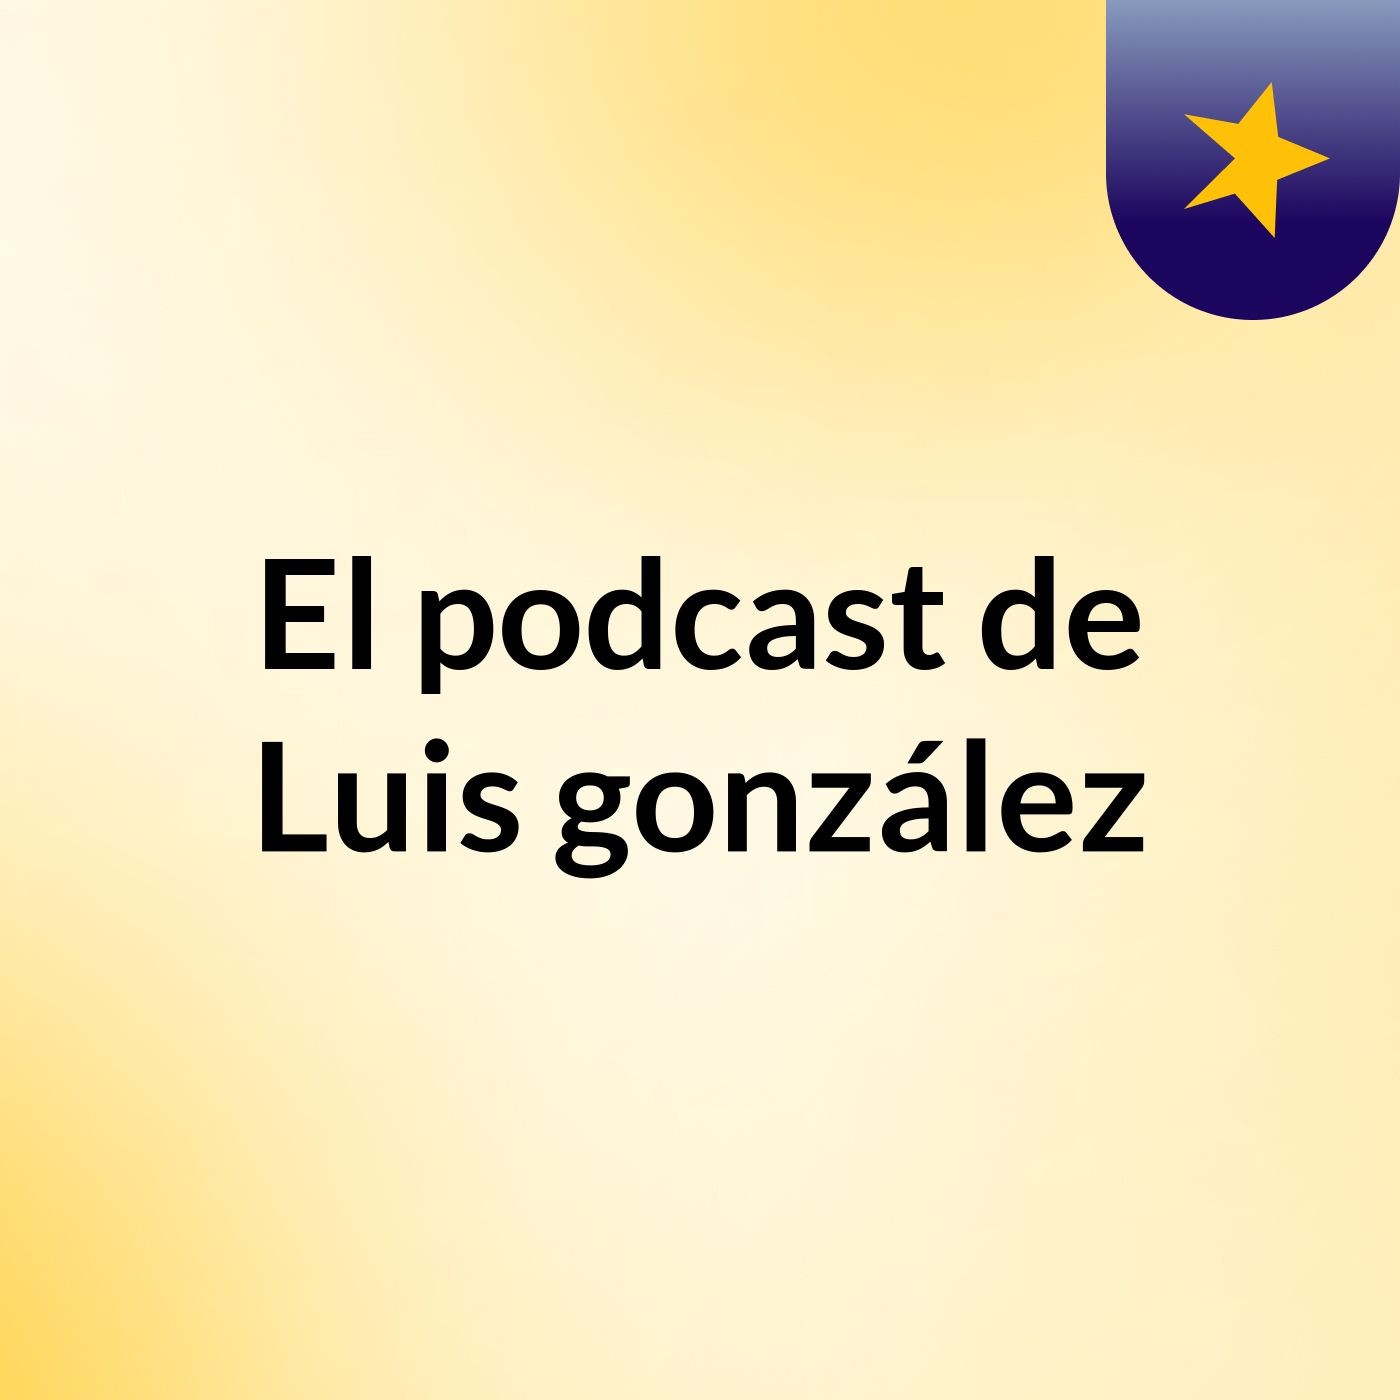 El podcast de Luis gonzález